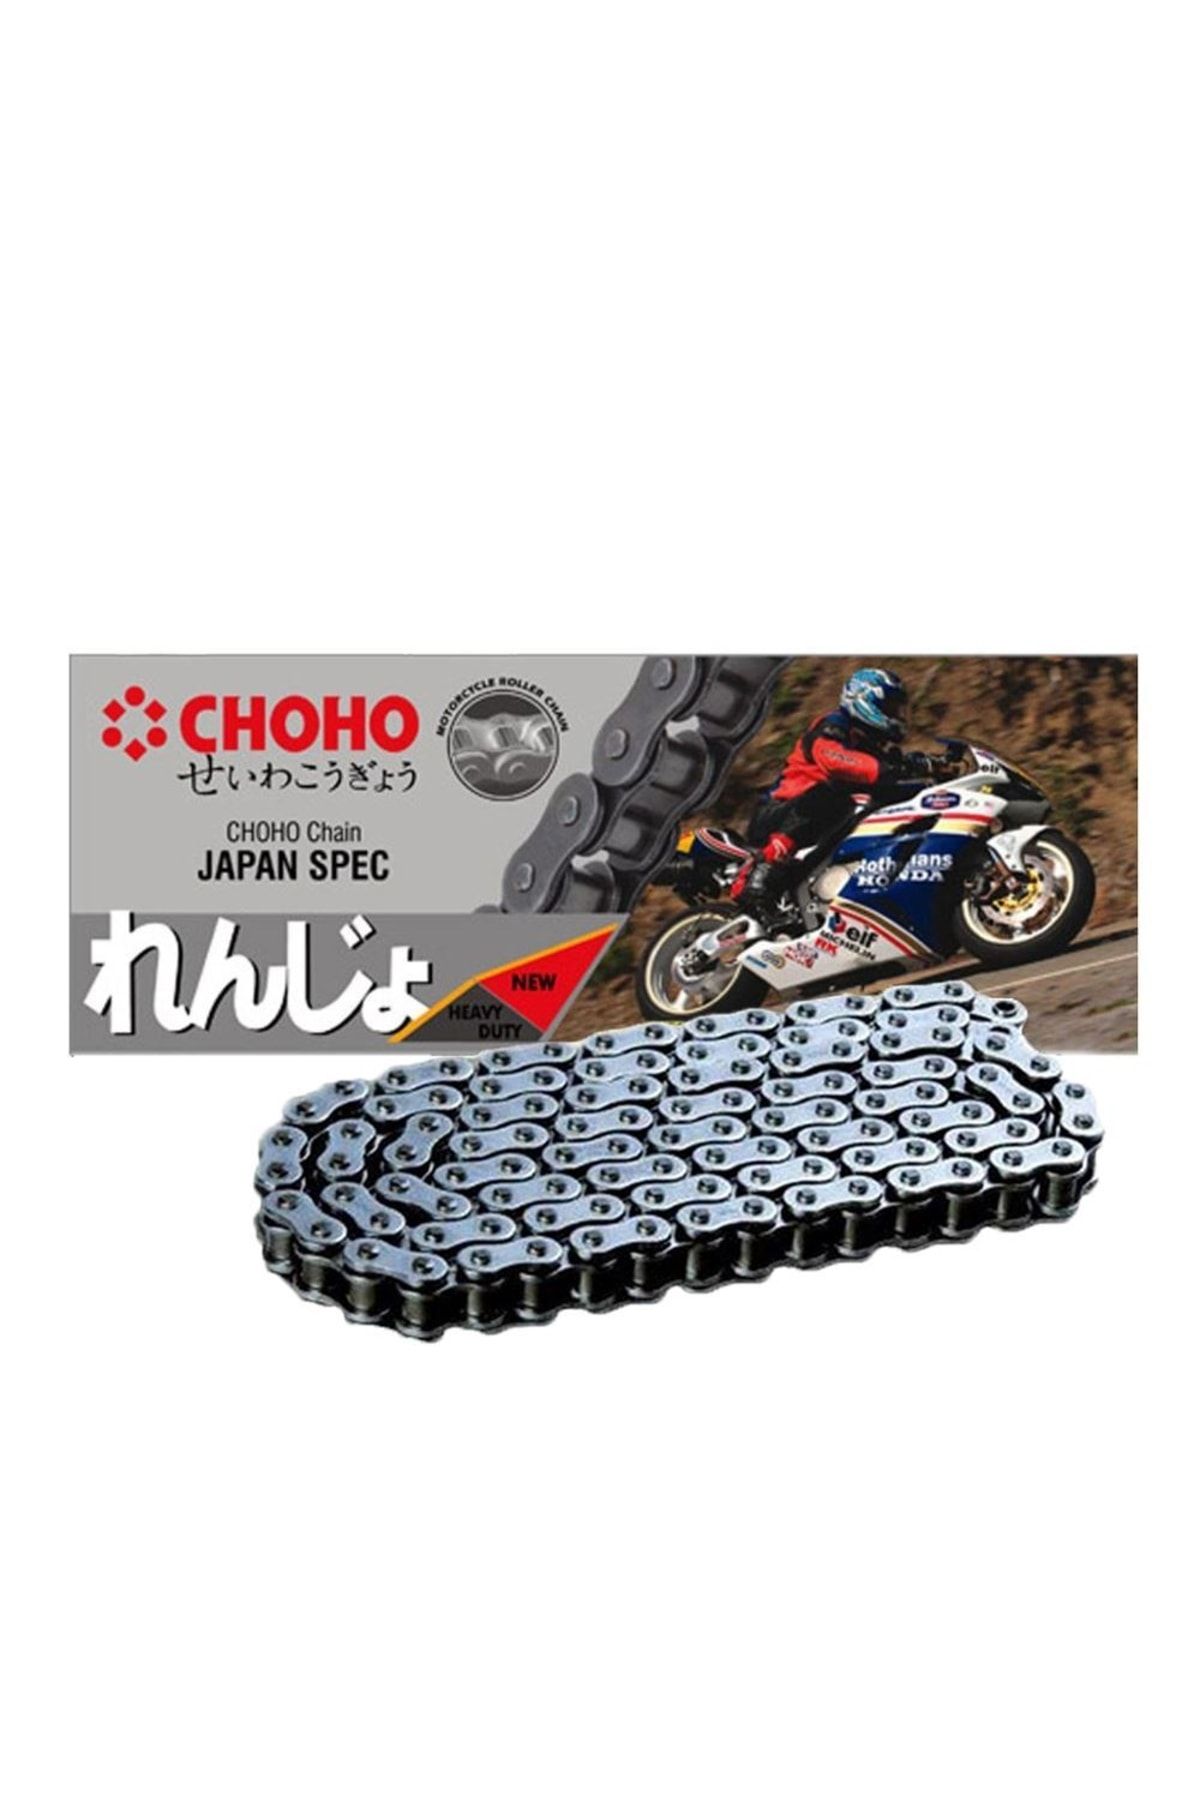 Yamaha T 110 Crypton Choho O-ring Zincir 428 Ho 100l